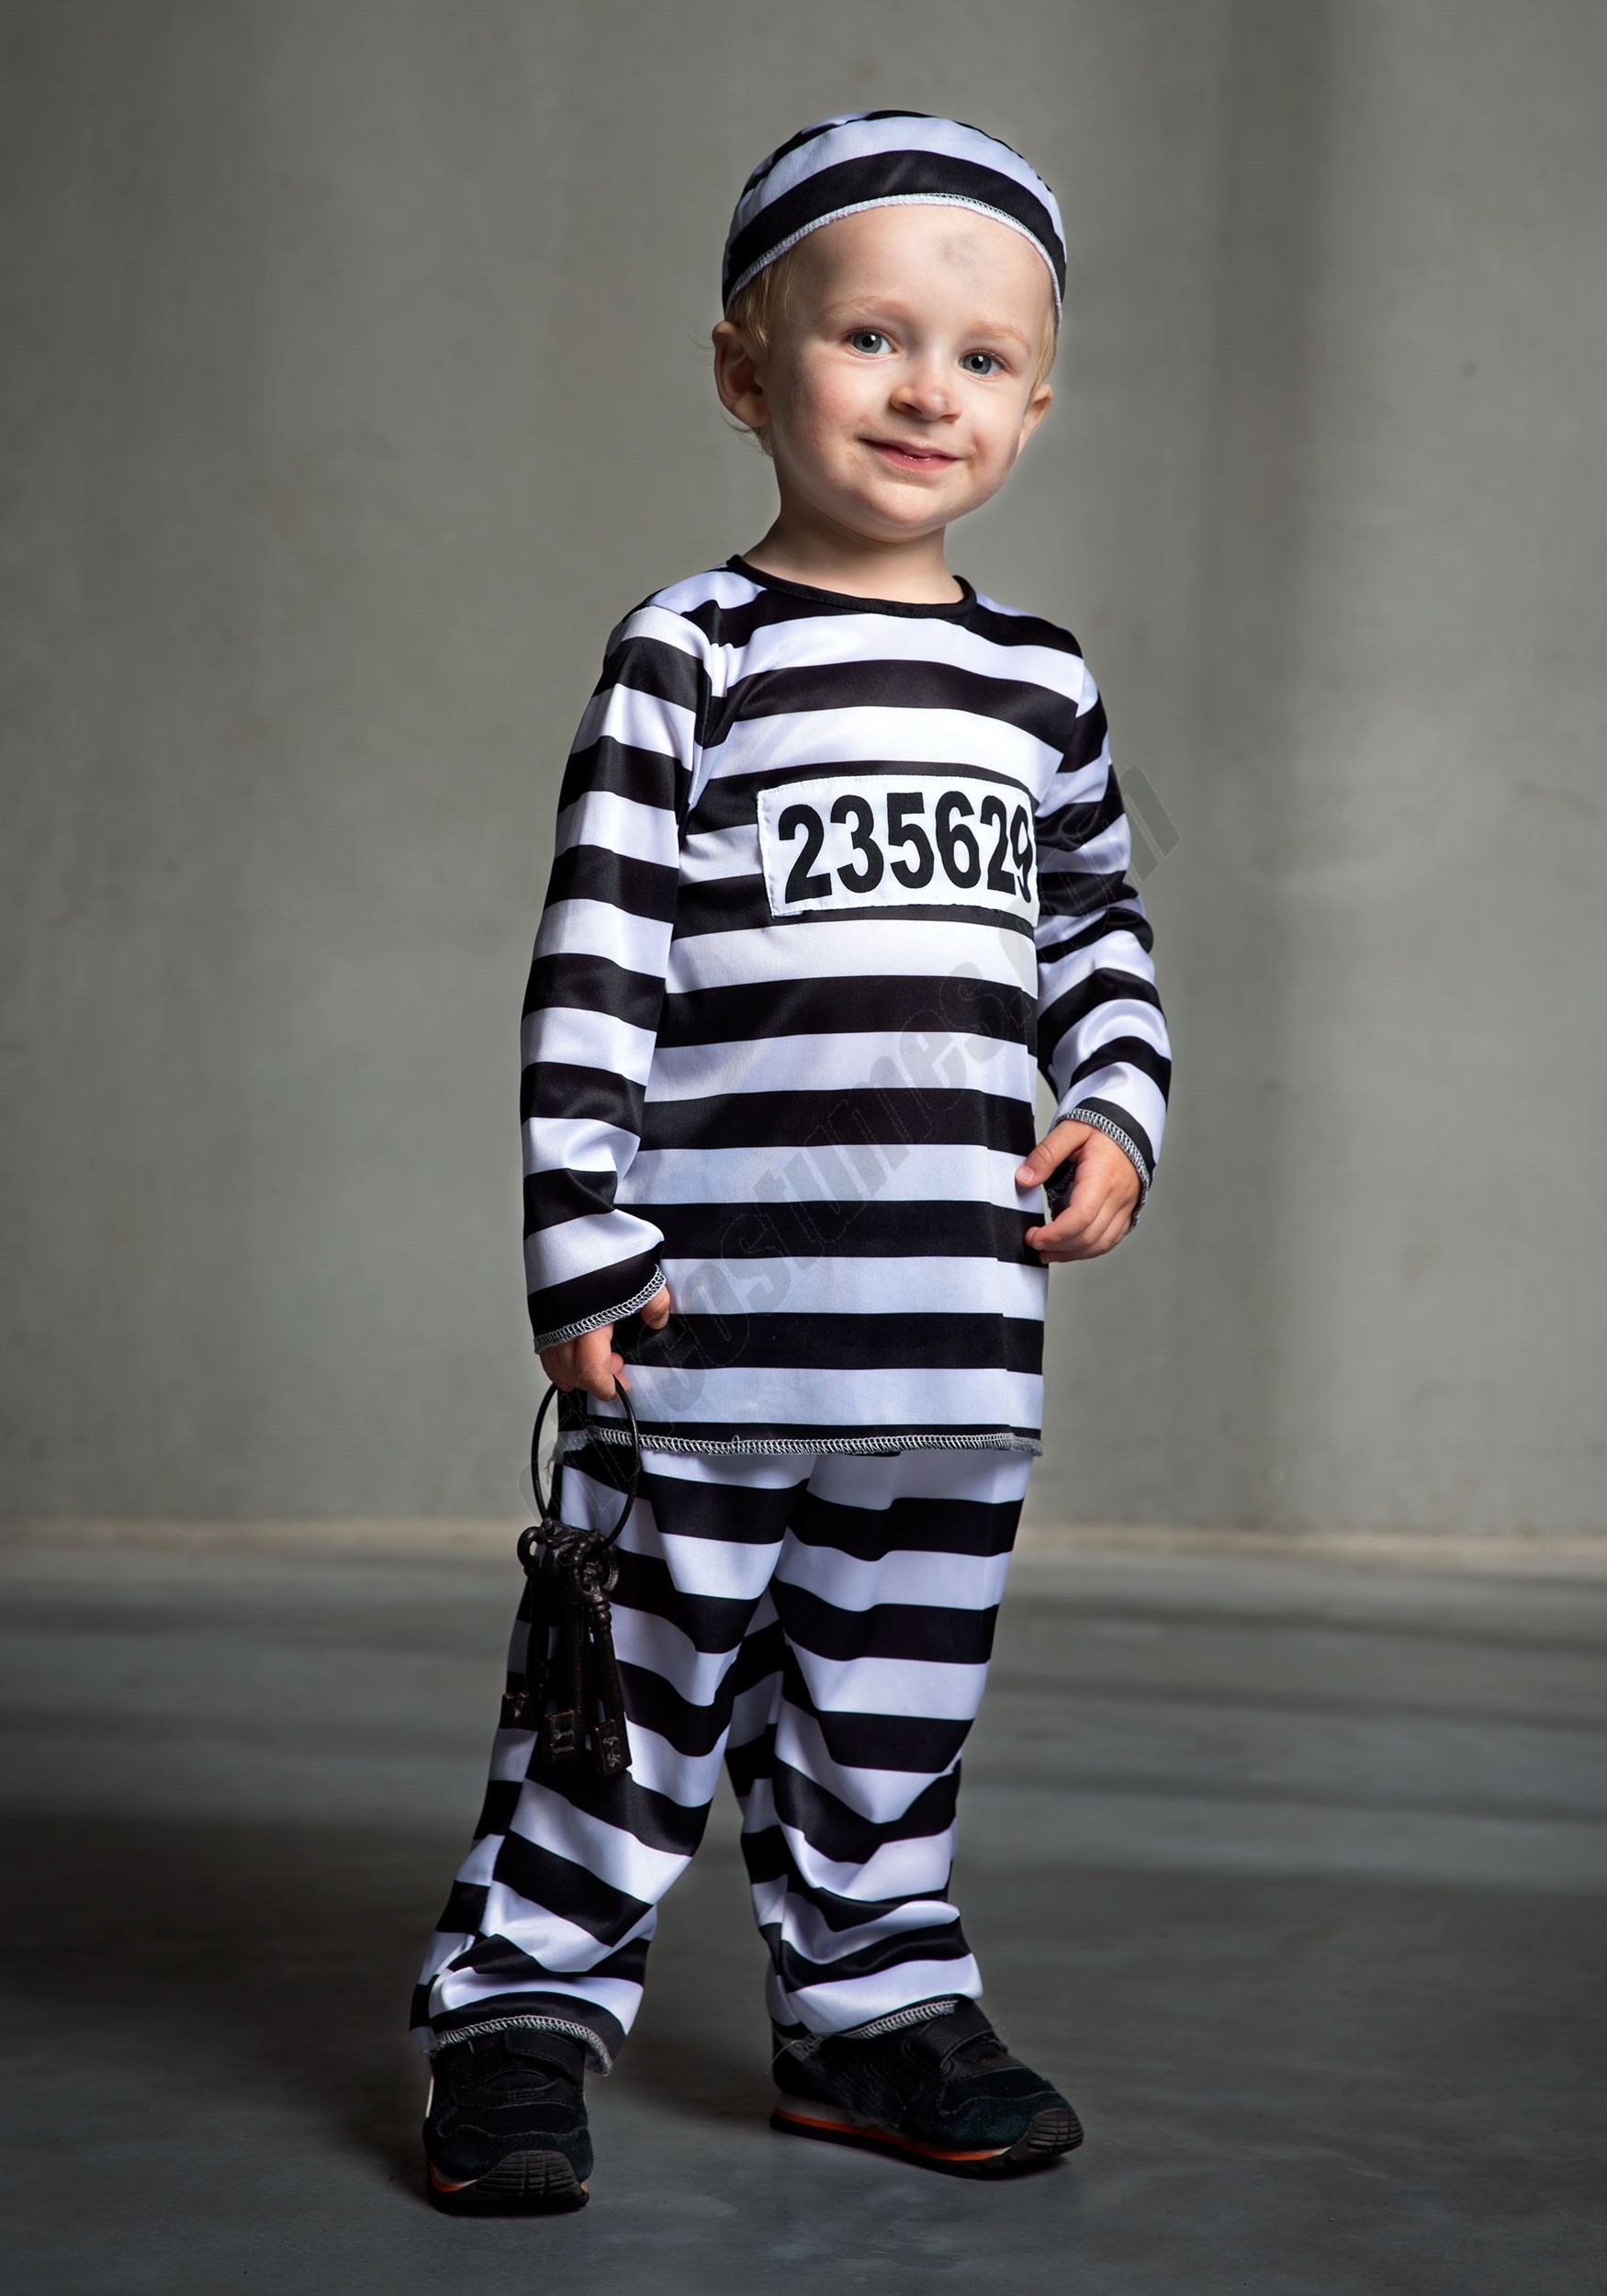 Toddler Prisoner Costume Promotions - Toddler Prisoner Costume Promotions